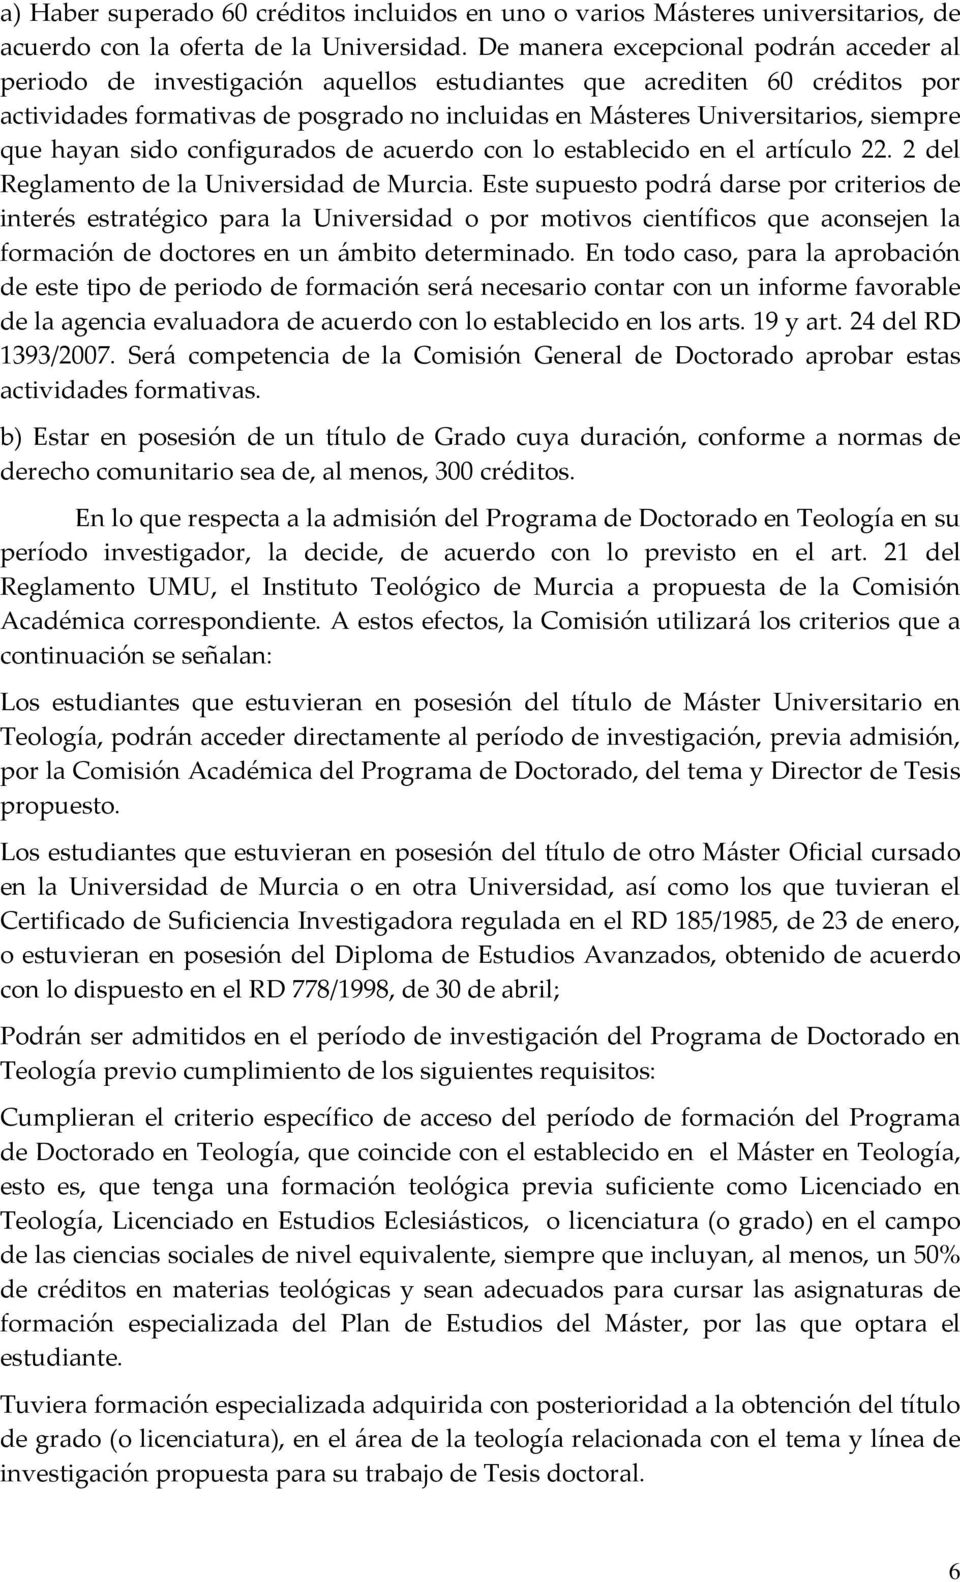 que hayan sido configurados de acuerdo con lo establecido en el artículo 22. 2 del Reglamento de la Universidad de Murcia.